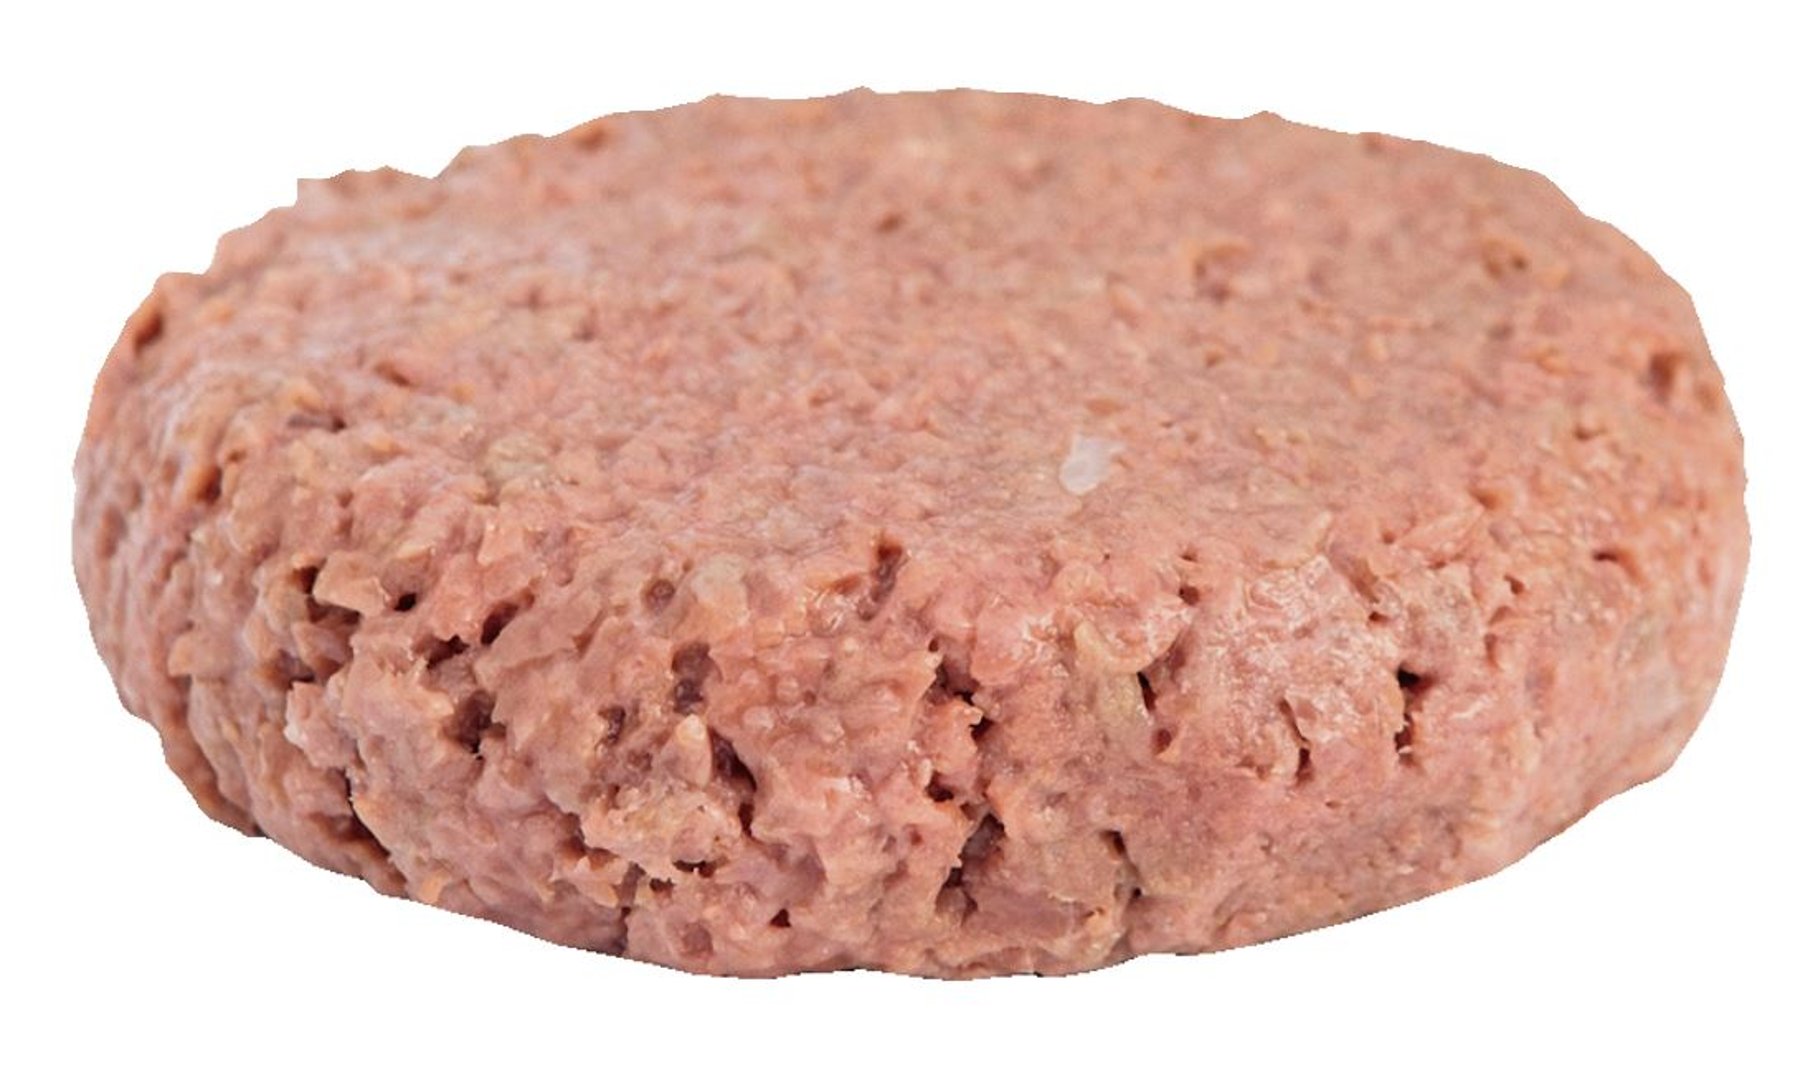 Beyond Meat - Beyond Burger tiefgefroren 40 Stück à ca. 113 g - 4,52 kg Karton